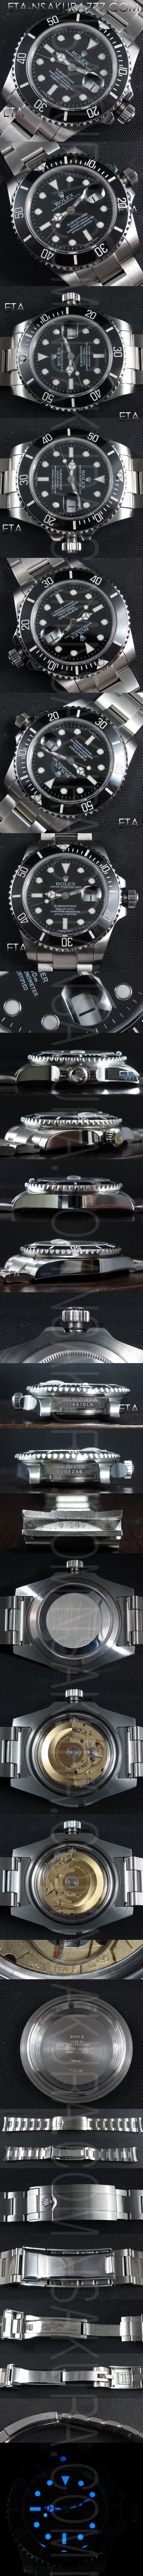 レプリカ時計ロレックス サブマリーナ Ref.16610LＮ, Swiss ETA 2836-2 ハイエンドモデル - ウインドウを閉じる